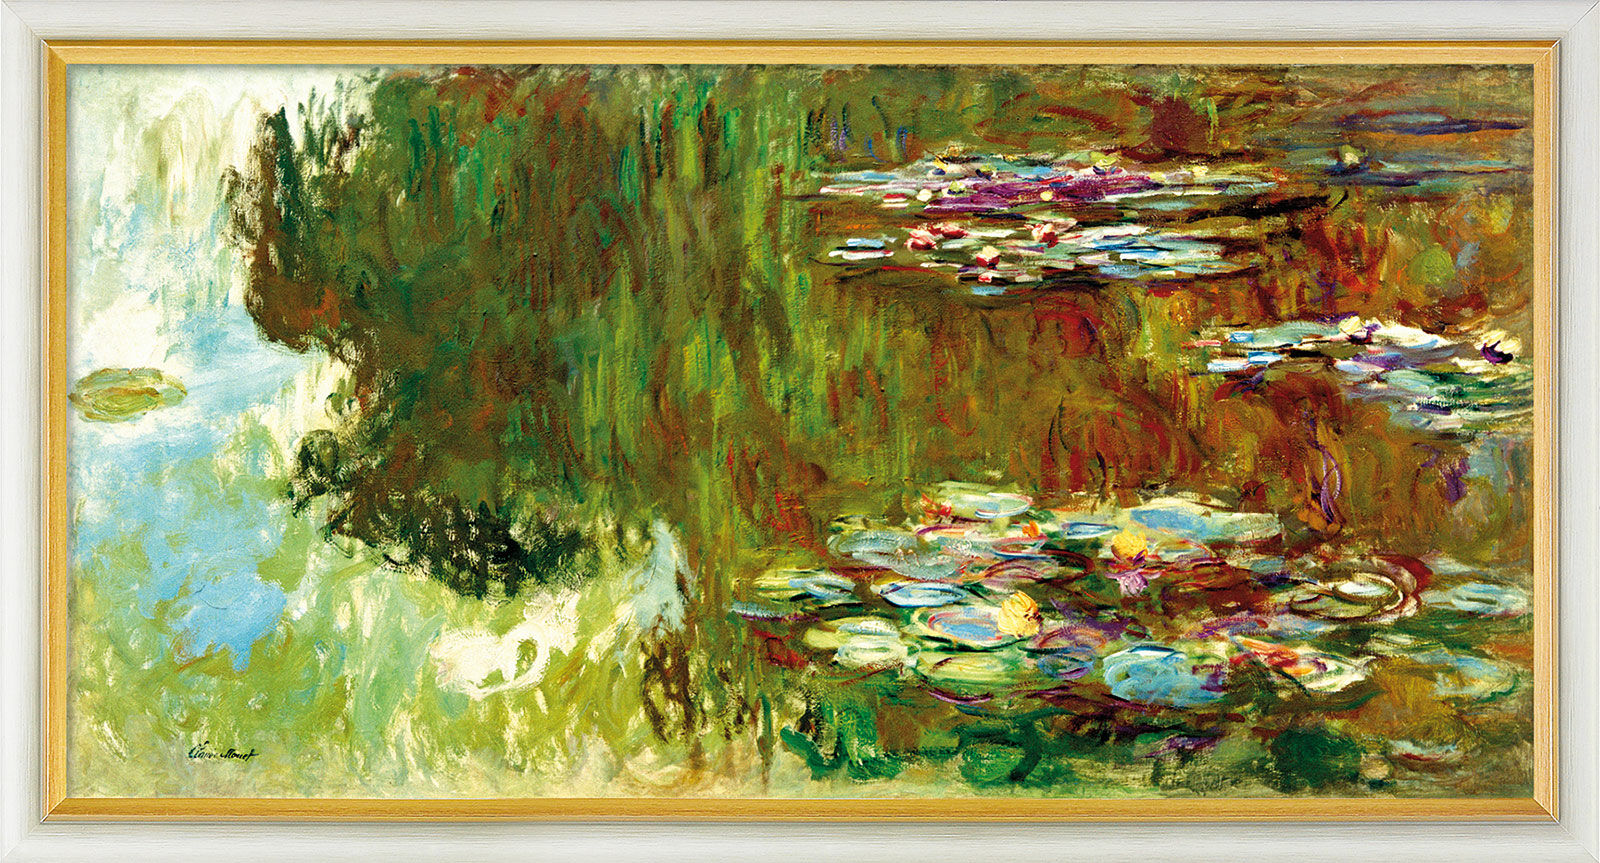 Beeld "Le bassin aux nymphéas" (1917-1919), ingelijst von Claude Monet